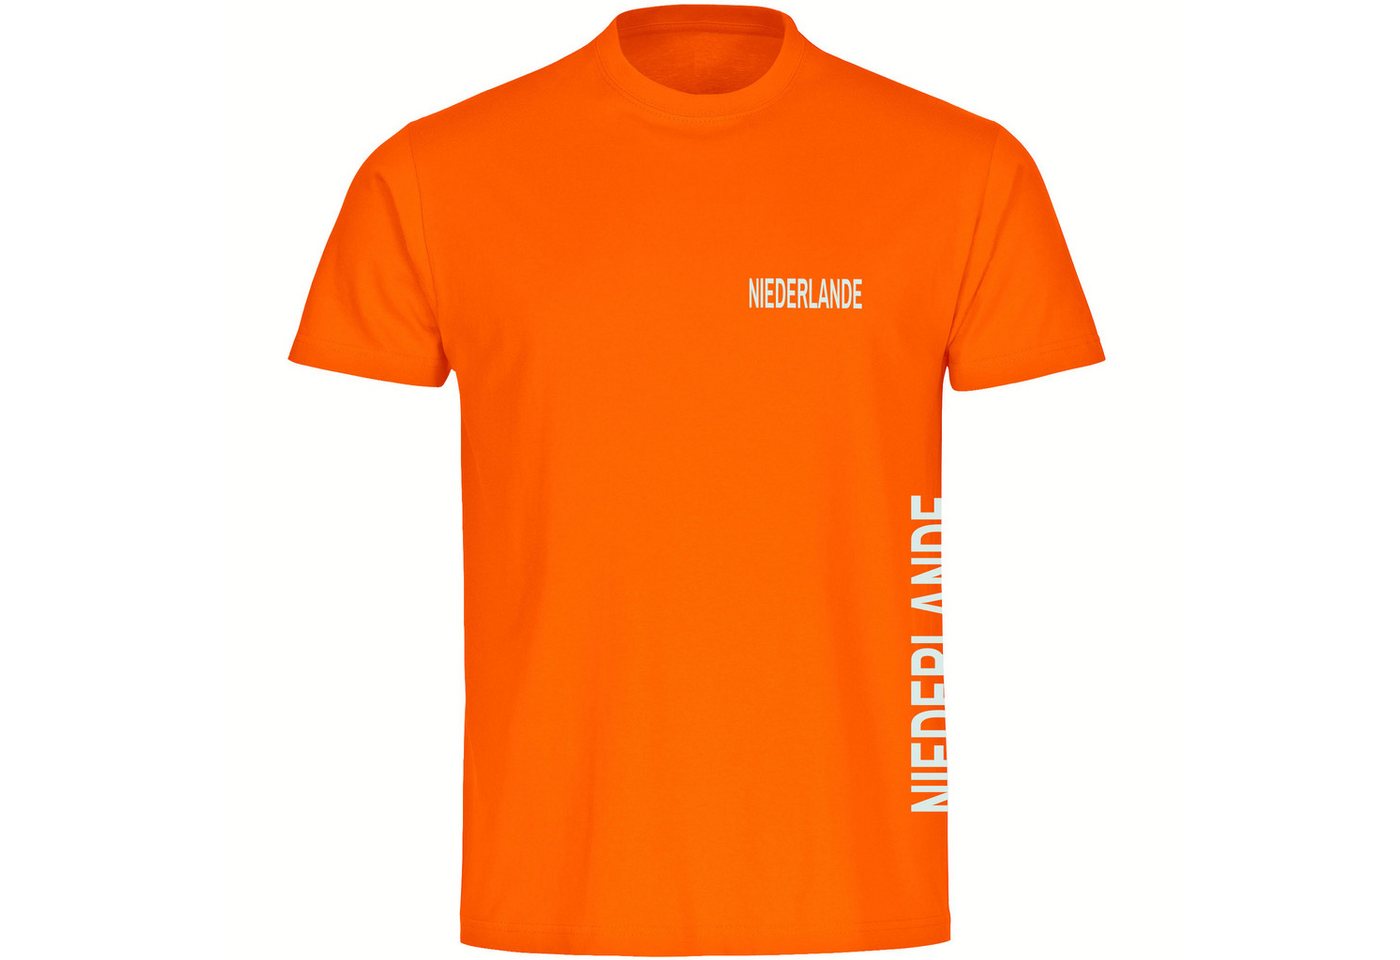 multifanshop T-Shirt Herren Niederlande - Brust & Seite - Männer von multifanshop